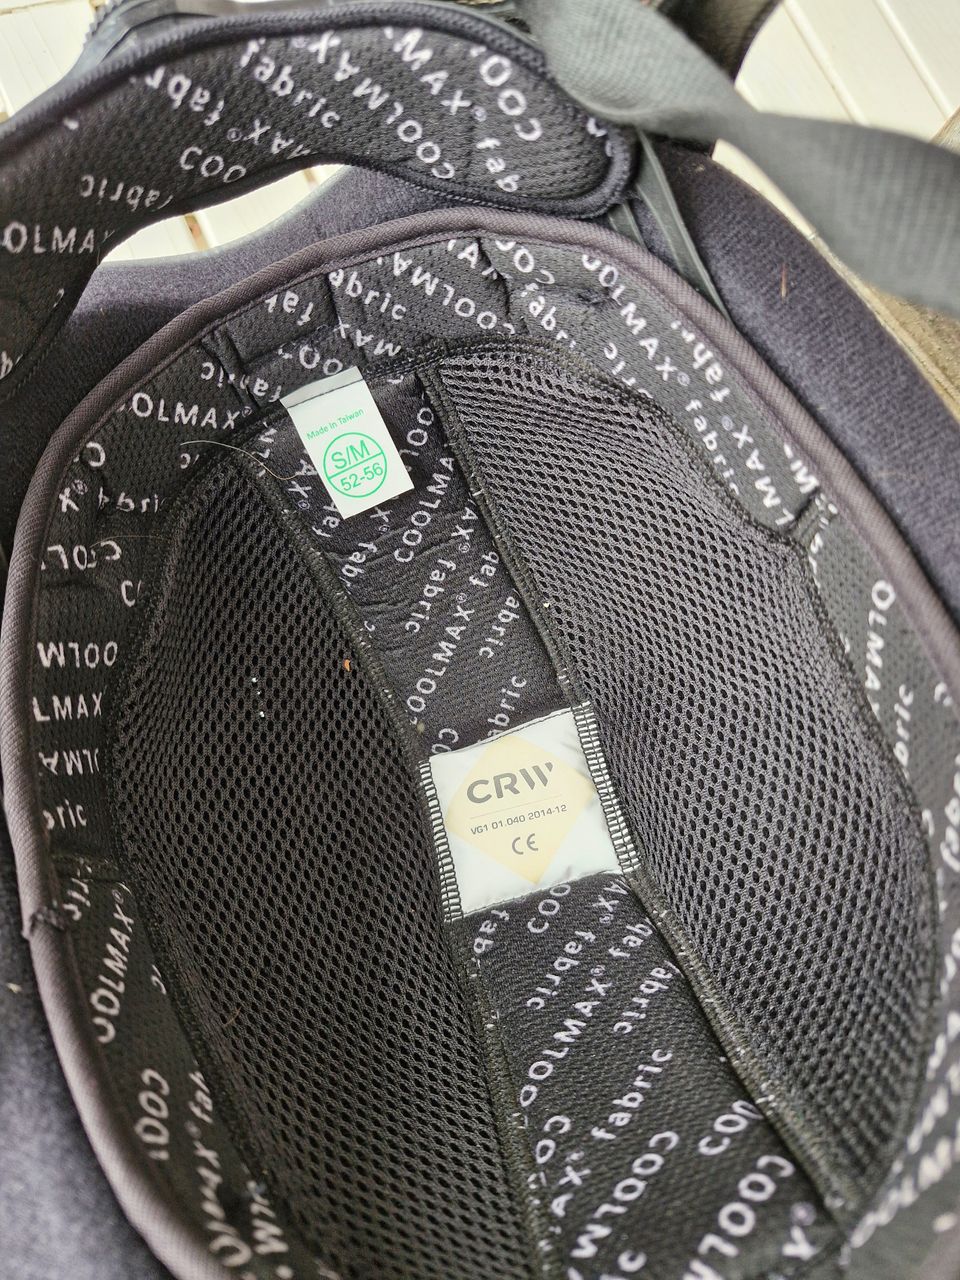 Crw merkkinen ratsastus kypärä VG1 luokituksella